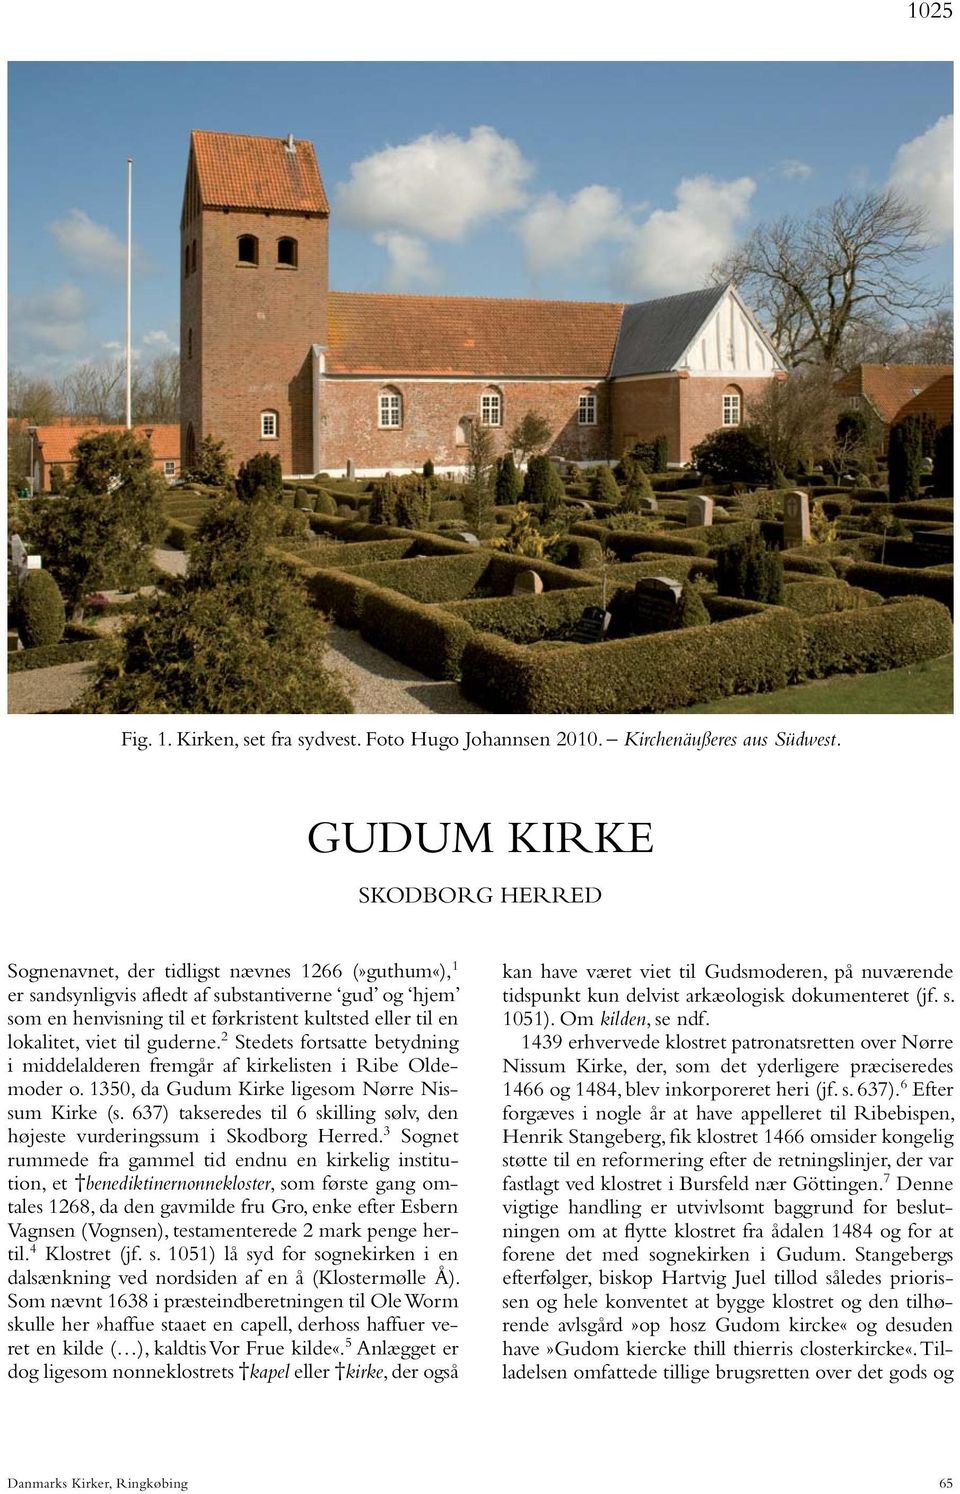 lokalitet, viet til guderne. 2 Stedets fortsatte betydning i middelalderen fremgår af kirkelisten i Ribe Oldemoder o. 1350, da Gudum Kirke ligesom Nørre Nissum Kirke (s.